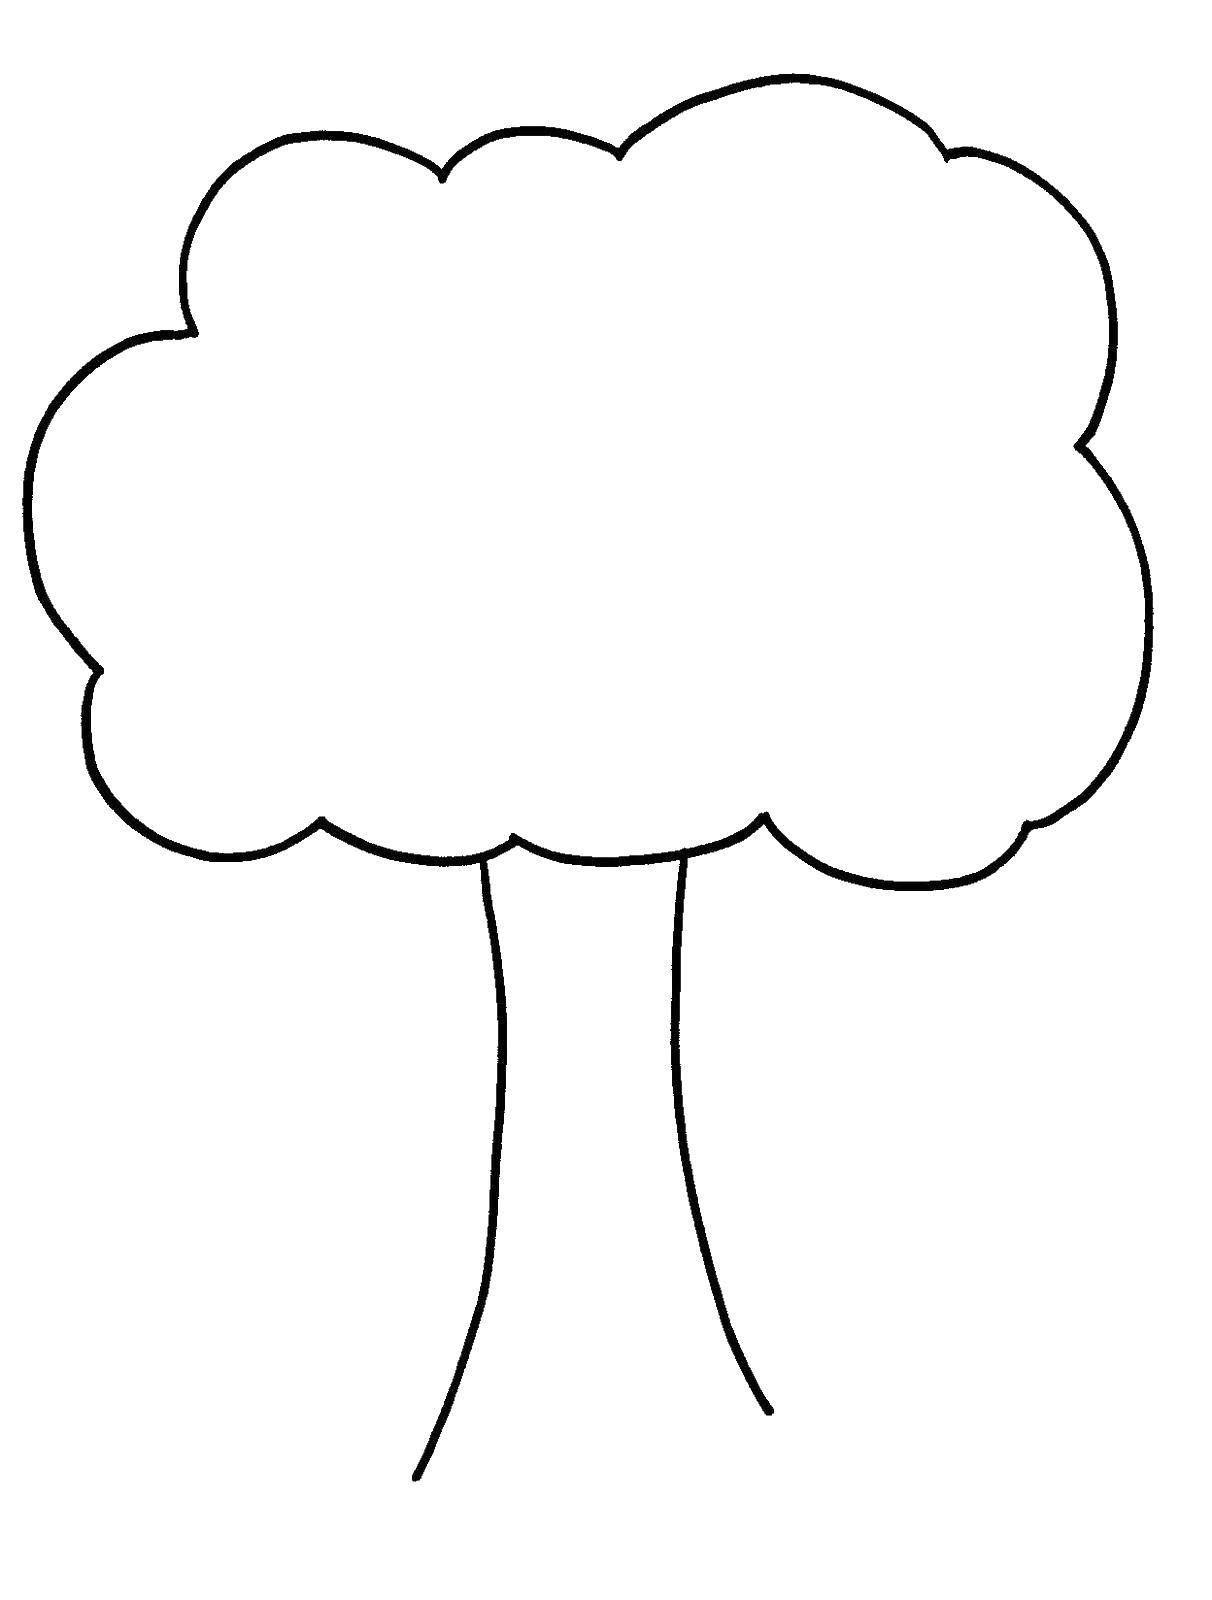 Название: Раскраска Дерево с большой кроной. Категория: Контур дерева. Теги: Деревья.